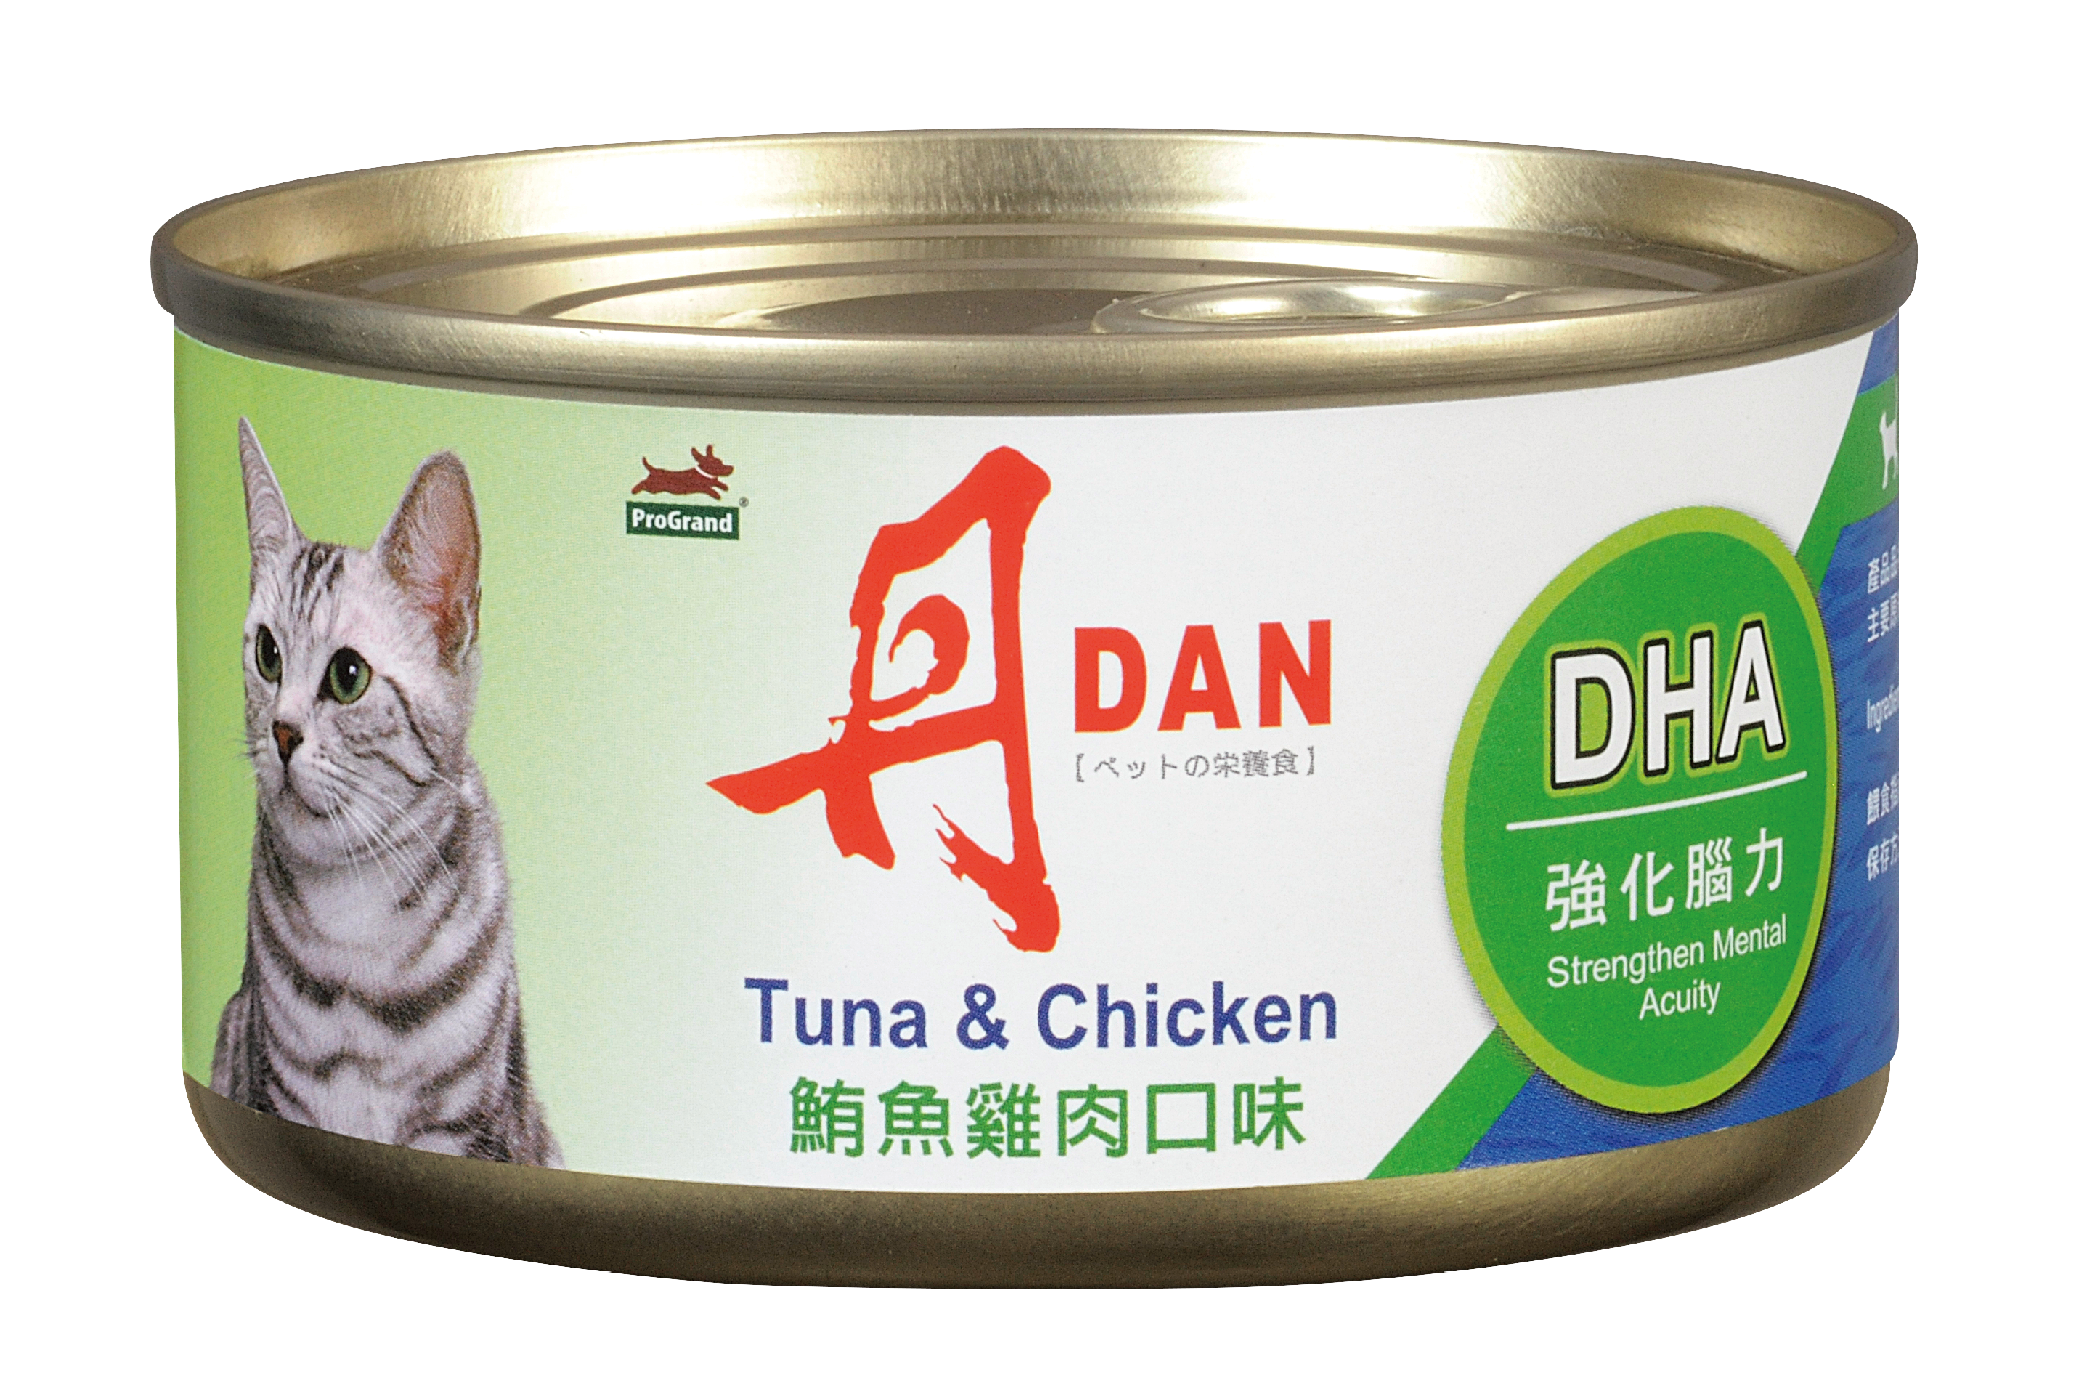 丹DAN 愛貓罐頭鮪魚雞肉口味
DAN Canned Cat Food - Tuna&Chicken Flavor